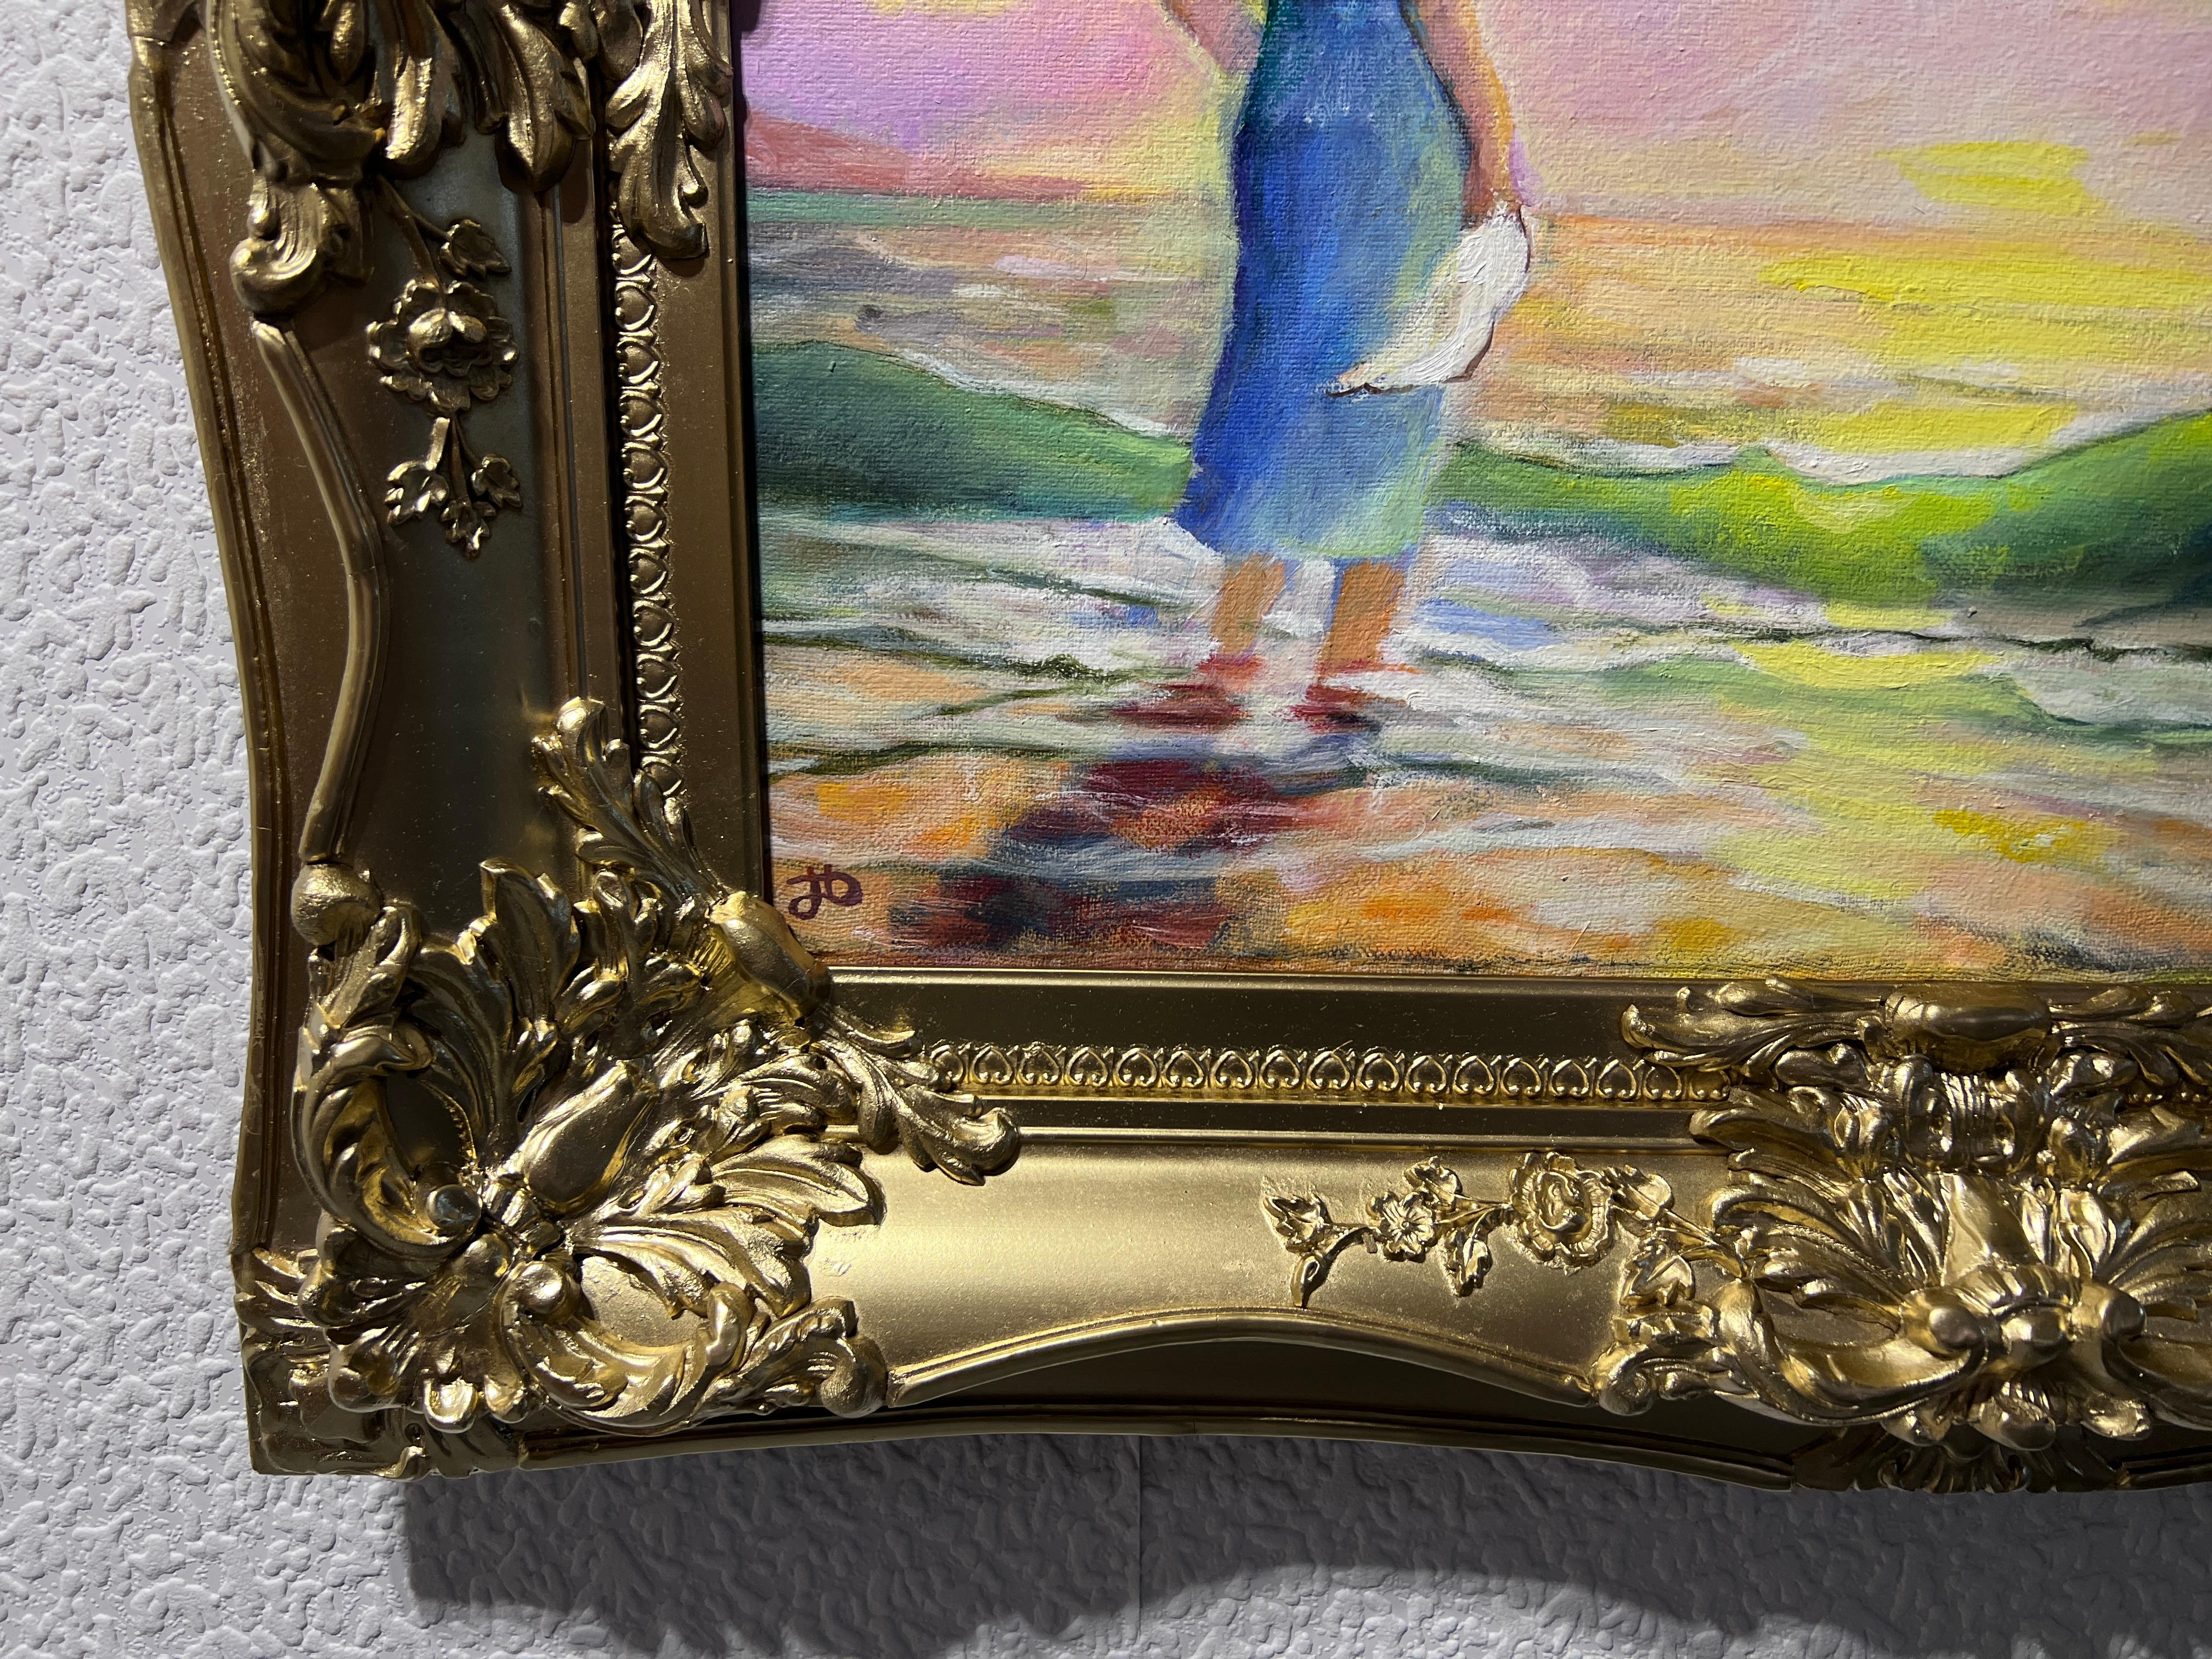 Dies ist ein original signiertes Ölgemälde auf Leinwand des russischen Künstlers  N.I. Dobritsin, das ein junges Mädchen in einem blauen Kleid und mit einem weißen Taschentuch in der Hand darstellt, das am Meeresufer steht und auf ein Segelboot mit